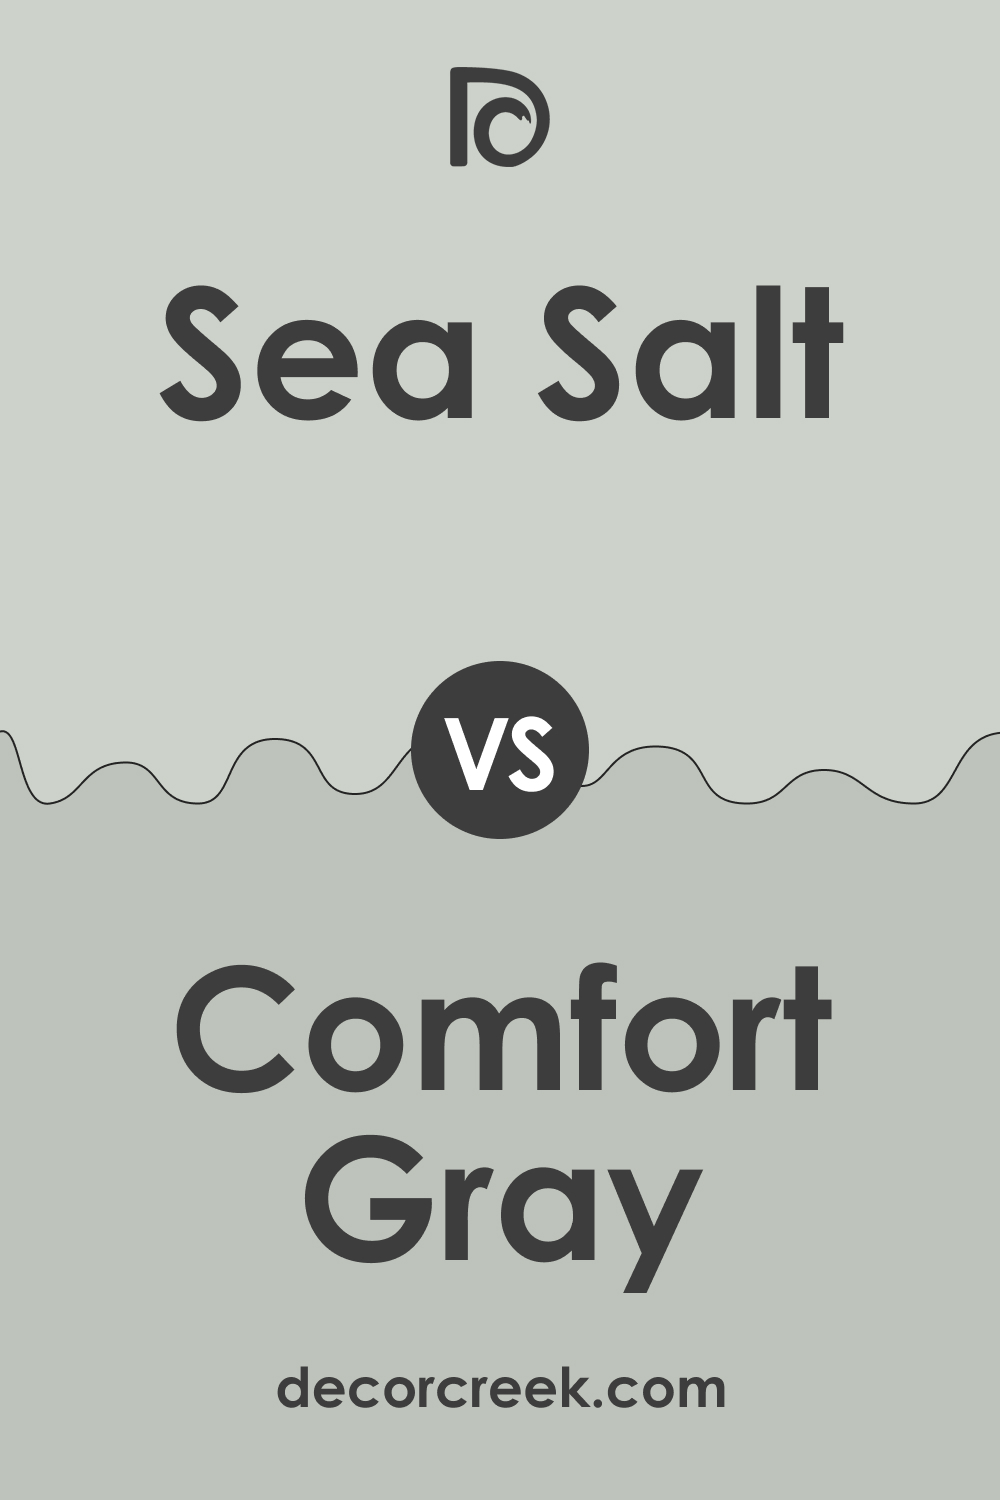 Sea Salt SW 6204 vs. SW 6205 Comfort Gray